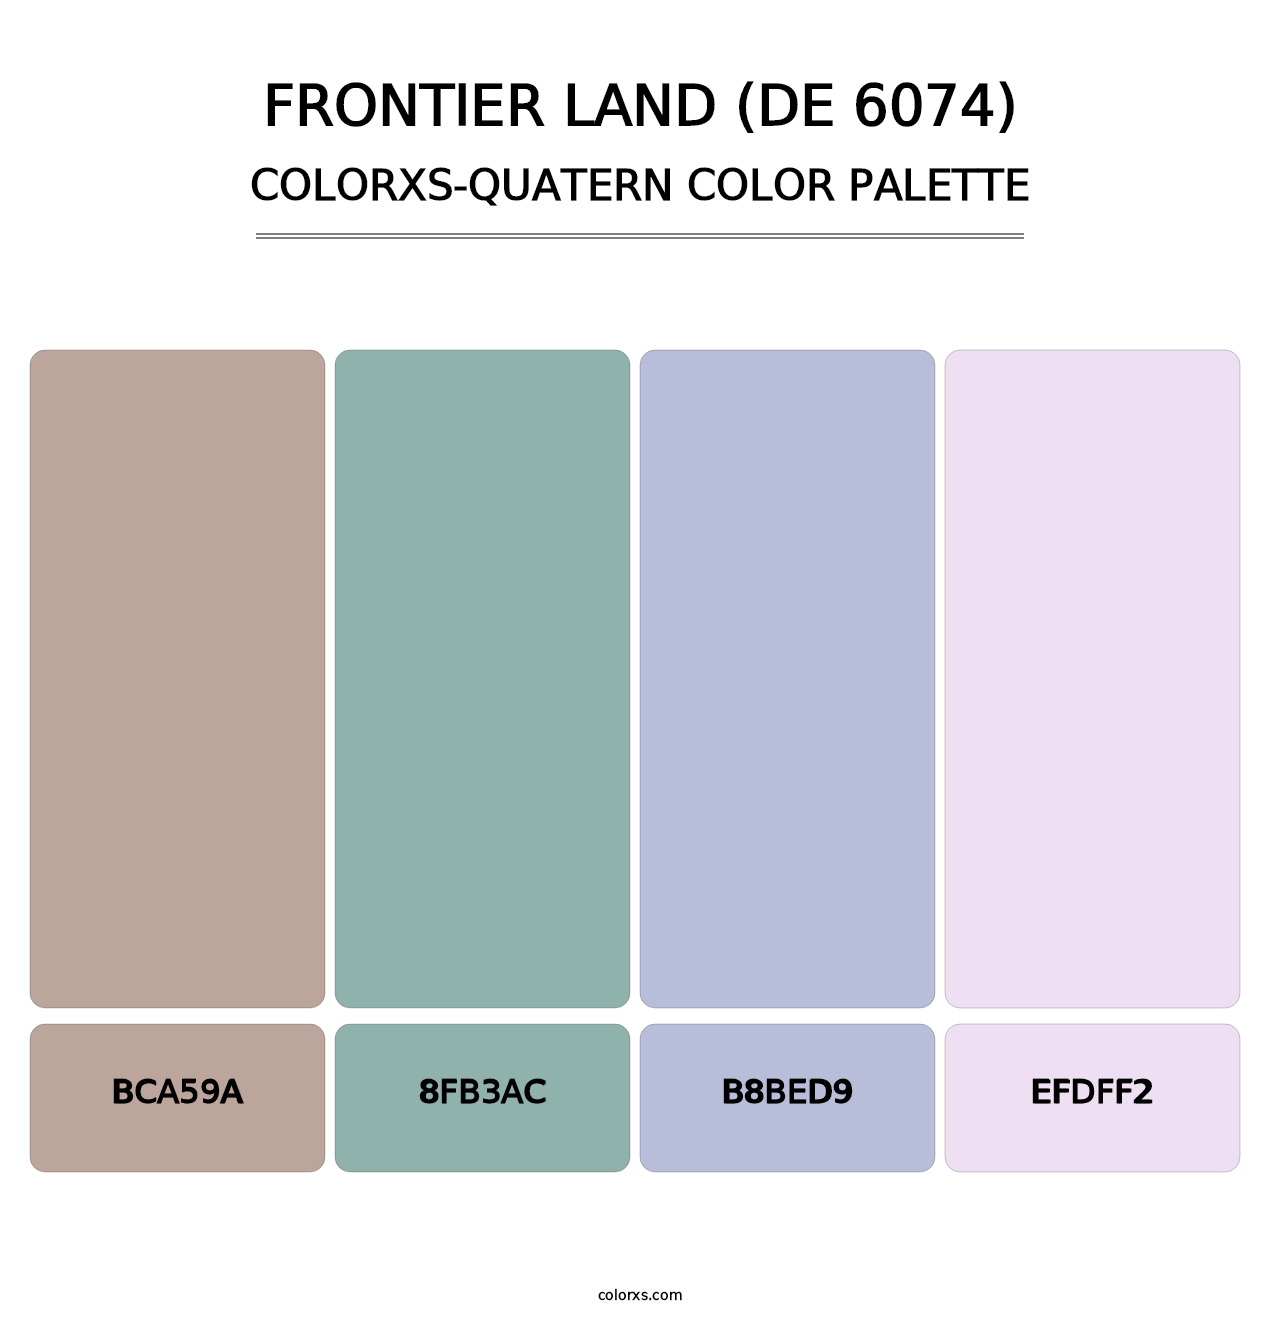 Frontier Land (DE 6074) - Colorxs Quatern Palette